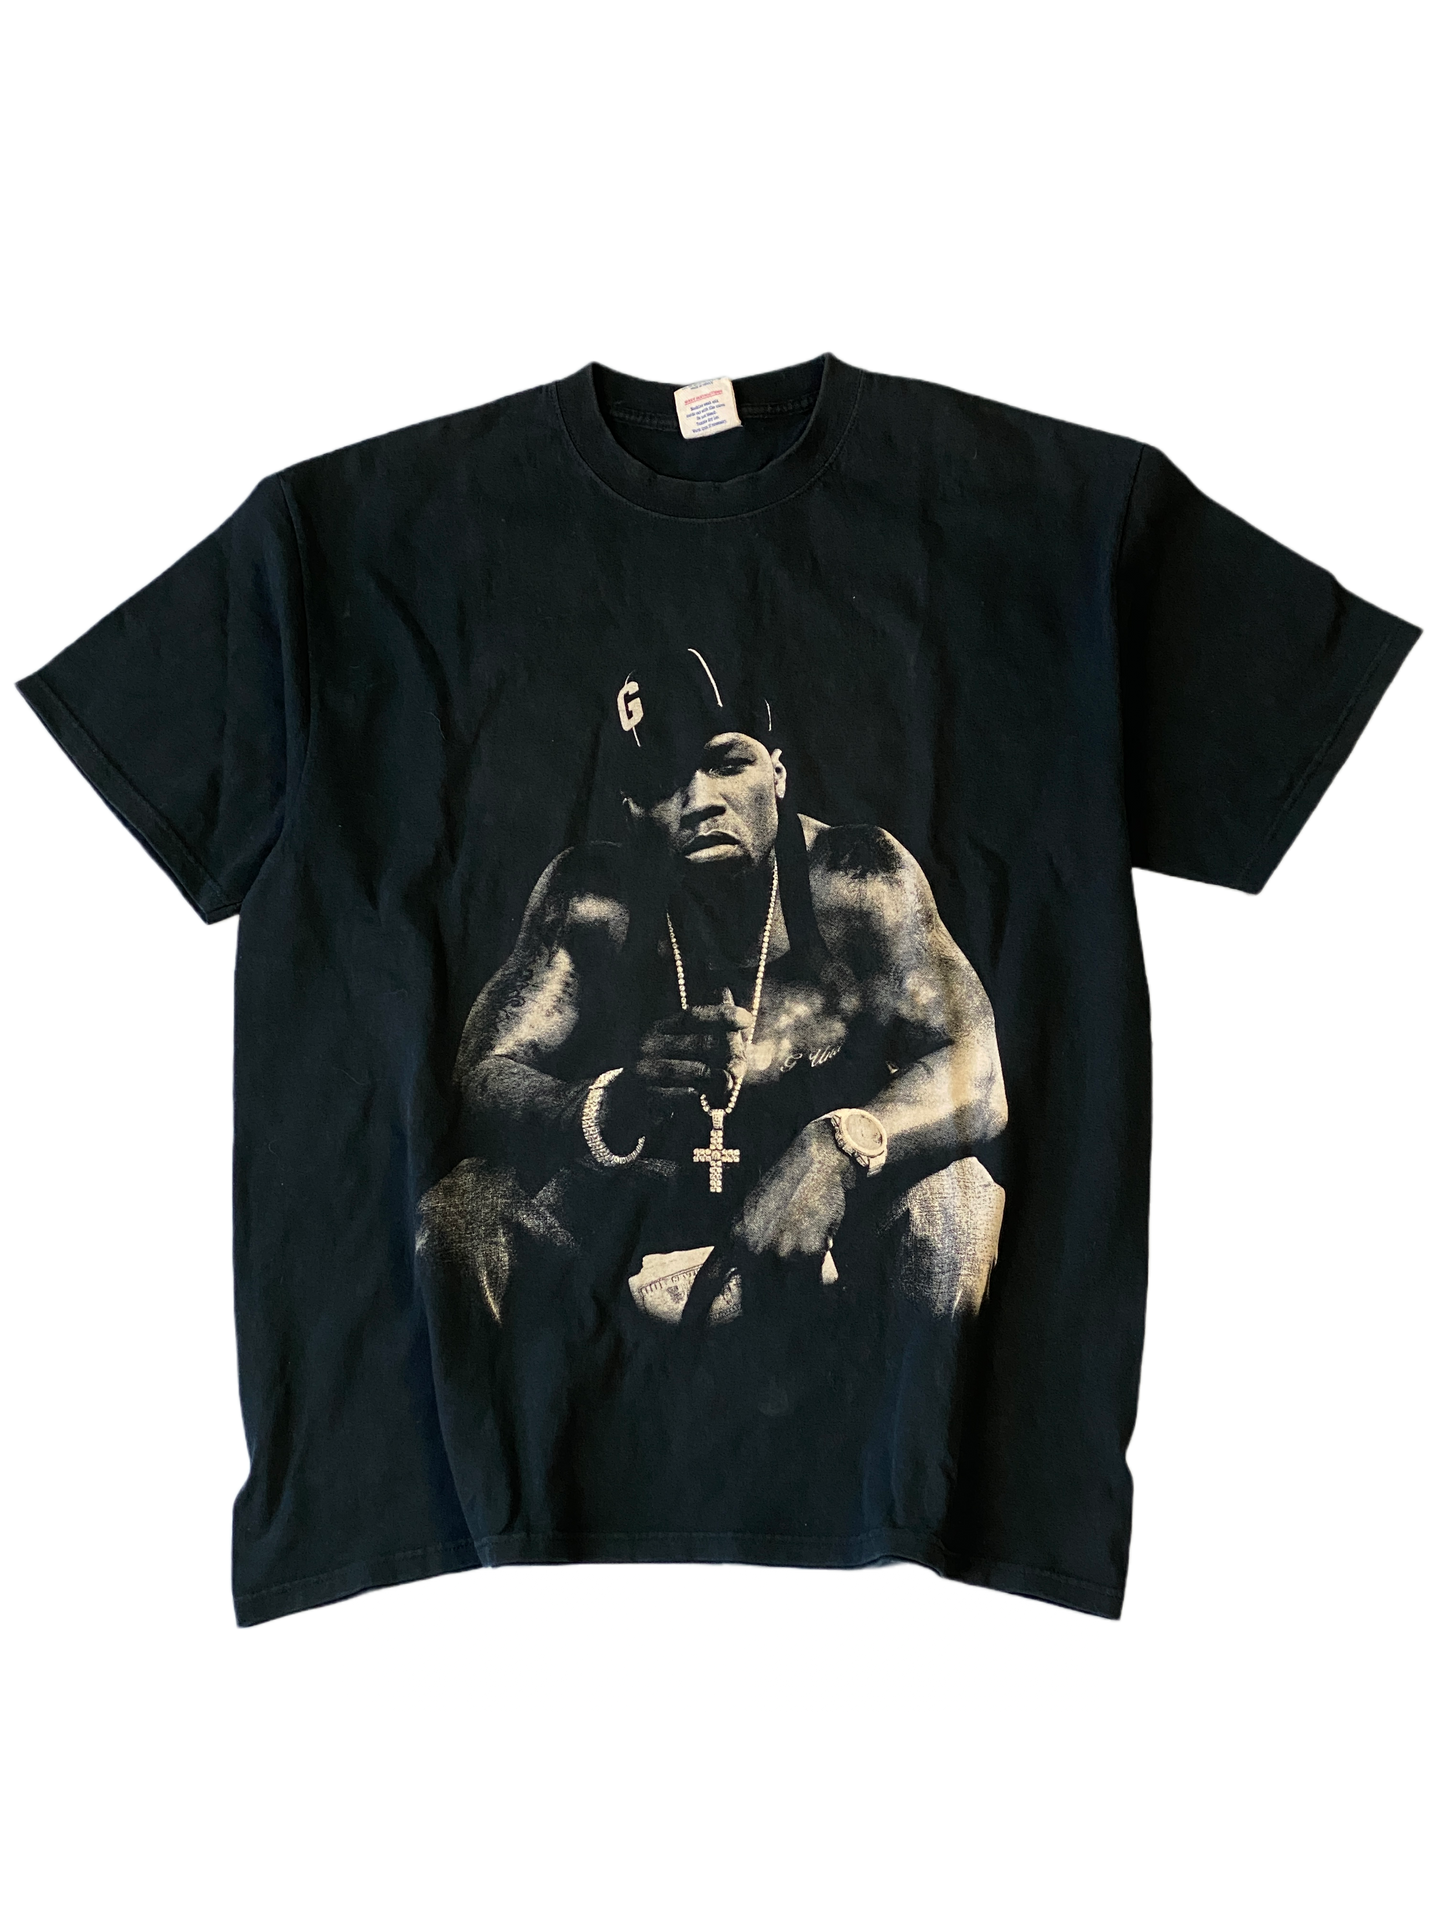 50 Cent Vintage T Shirt